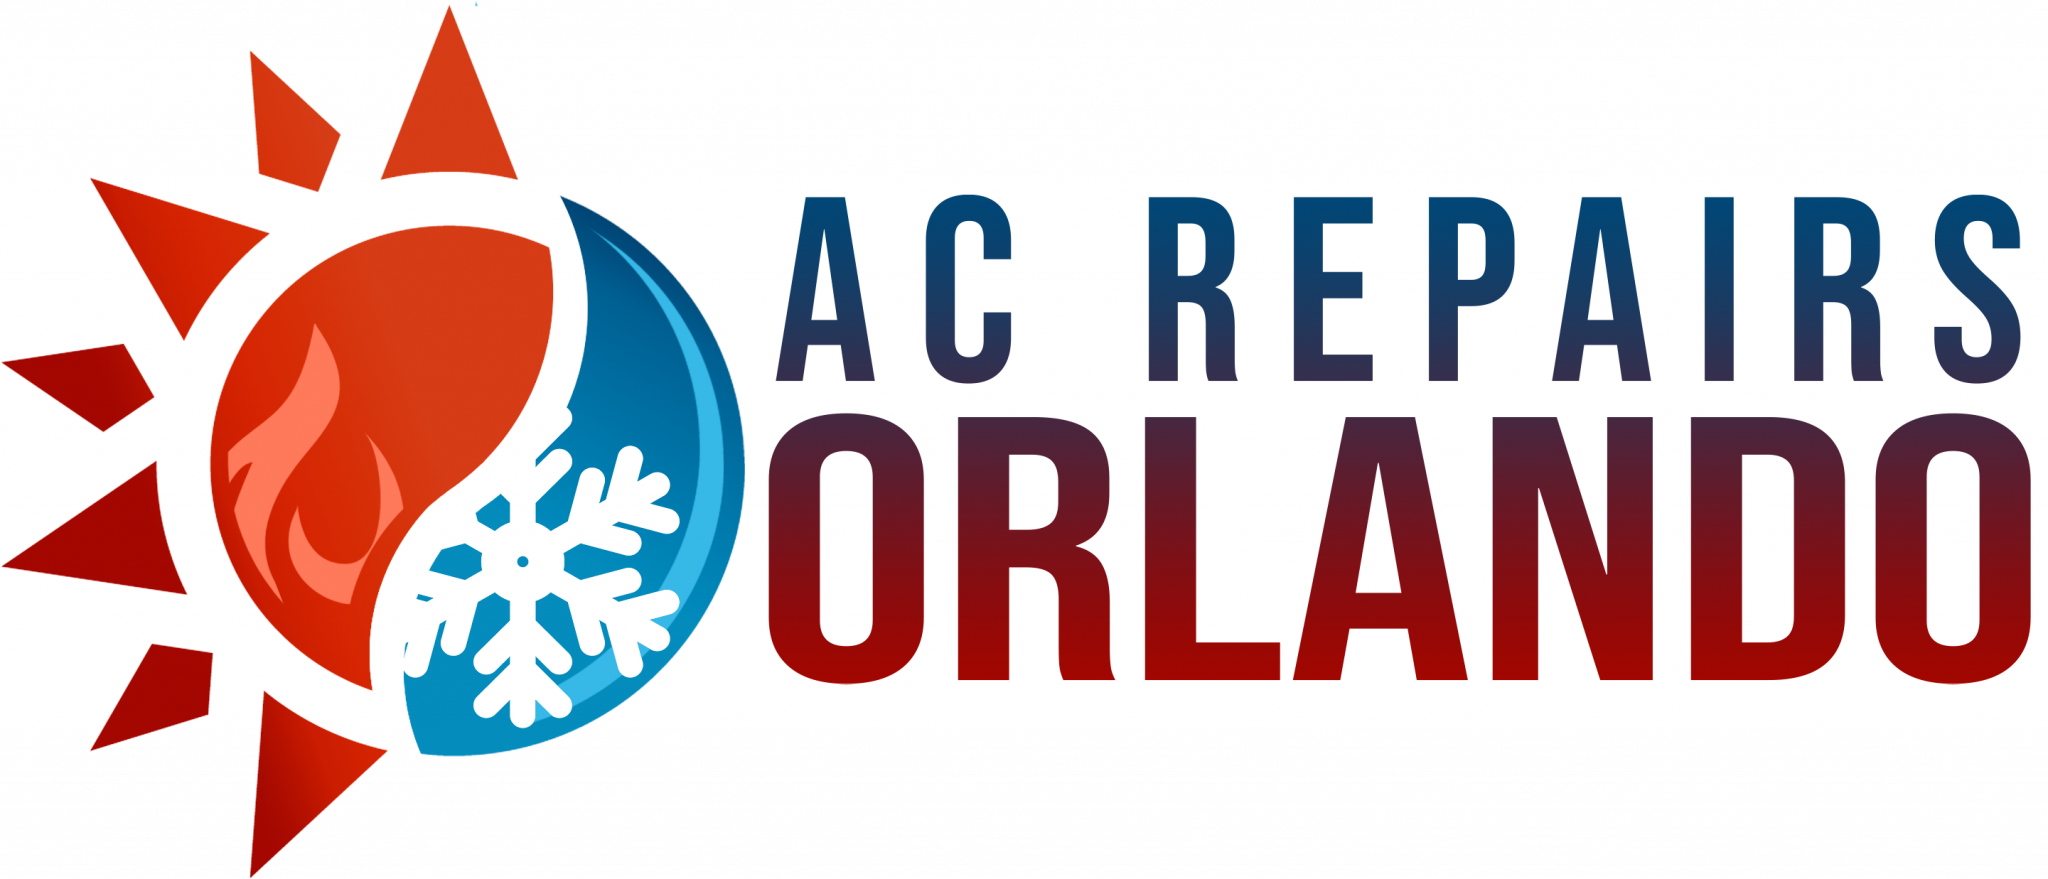 Ac Install Orlando